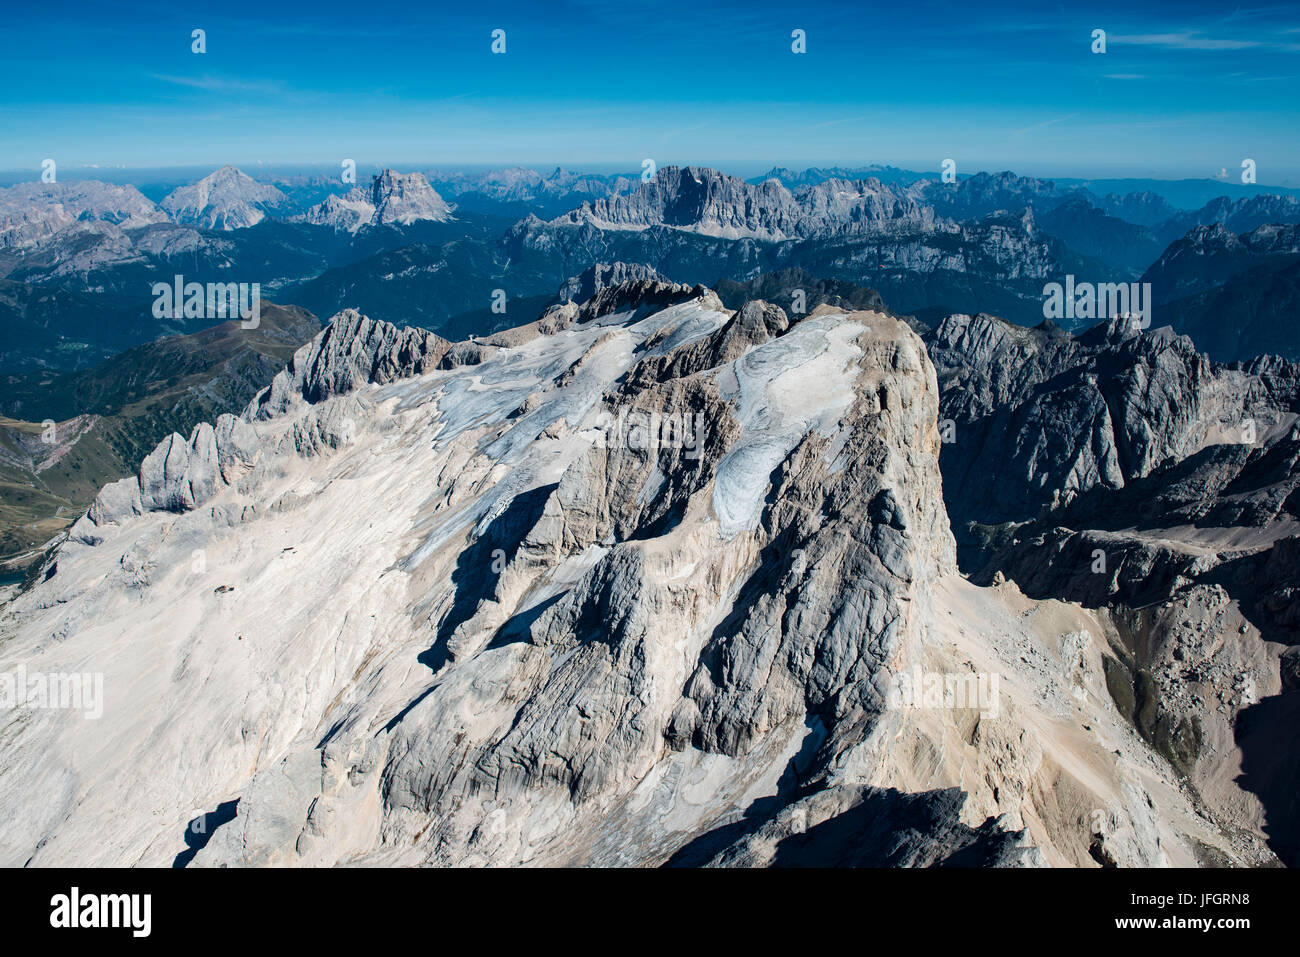 La Marmolada, le Dolomiti, parete bar, Marmoladagletscher, fotografia aerea, alte montagne, Trentino, Italia Foto Stock